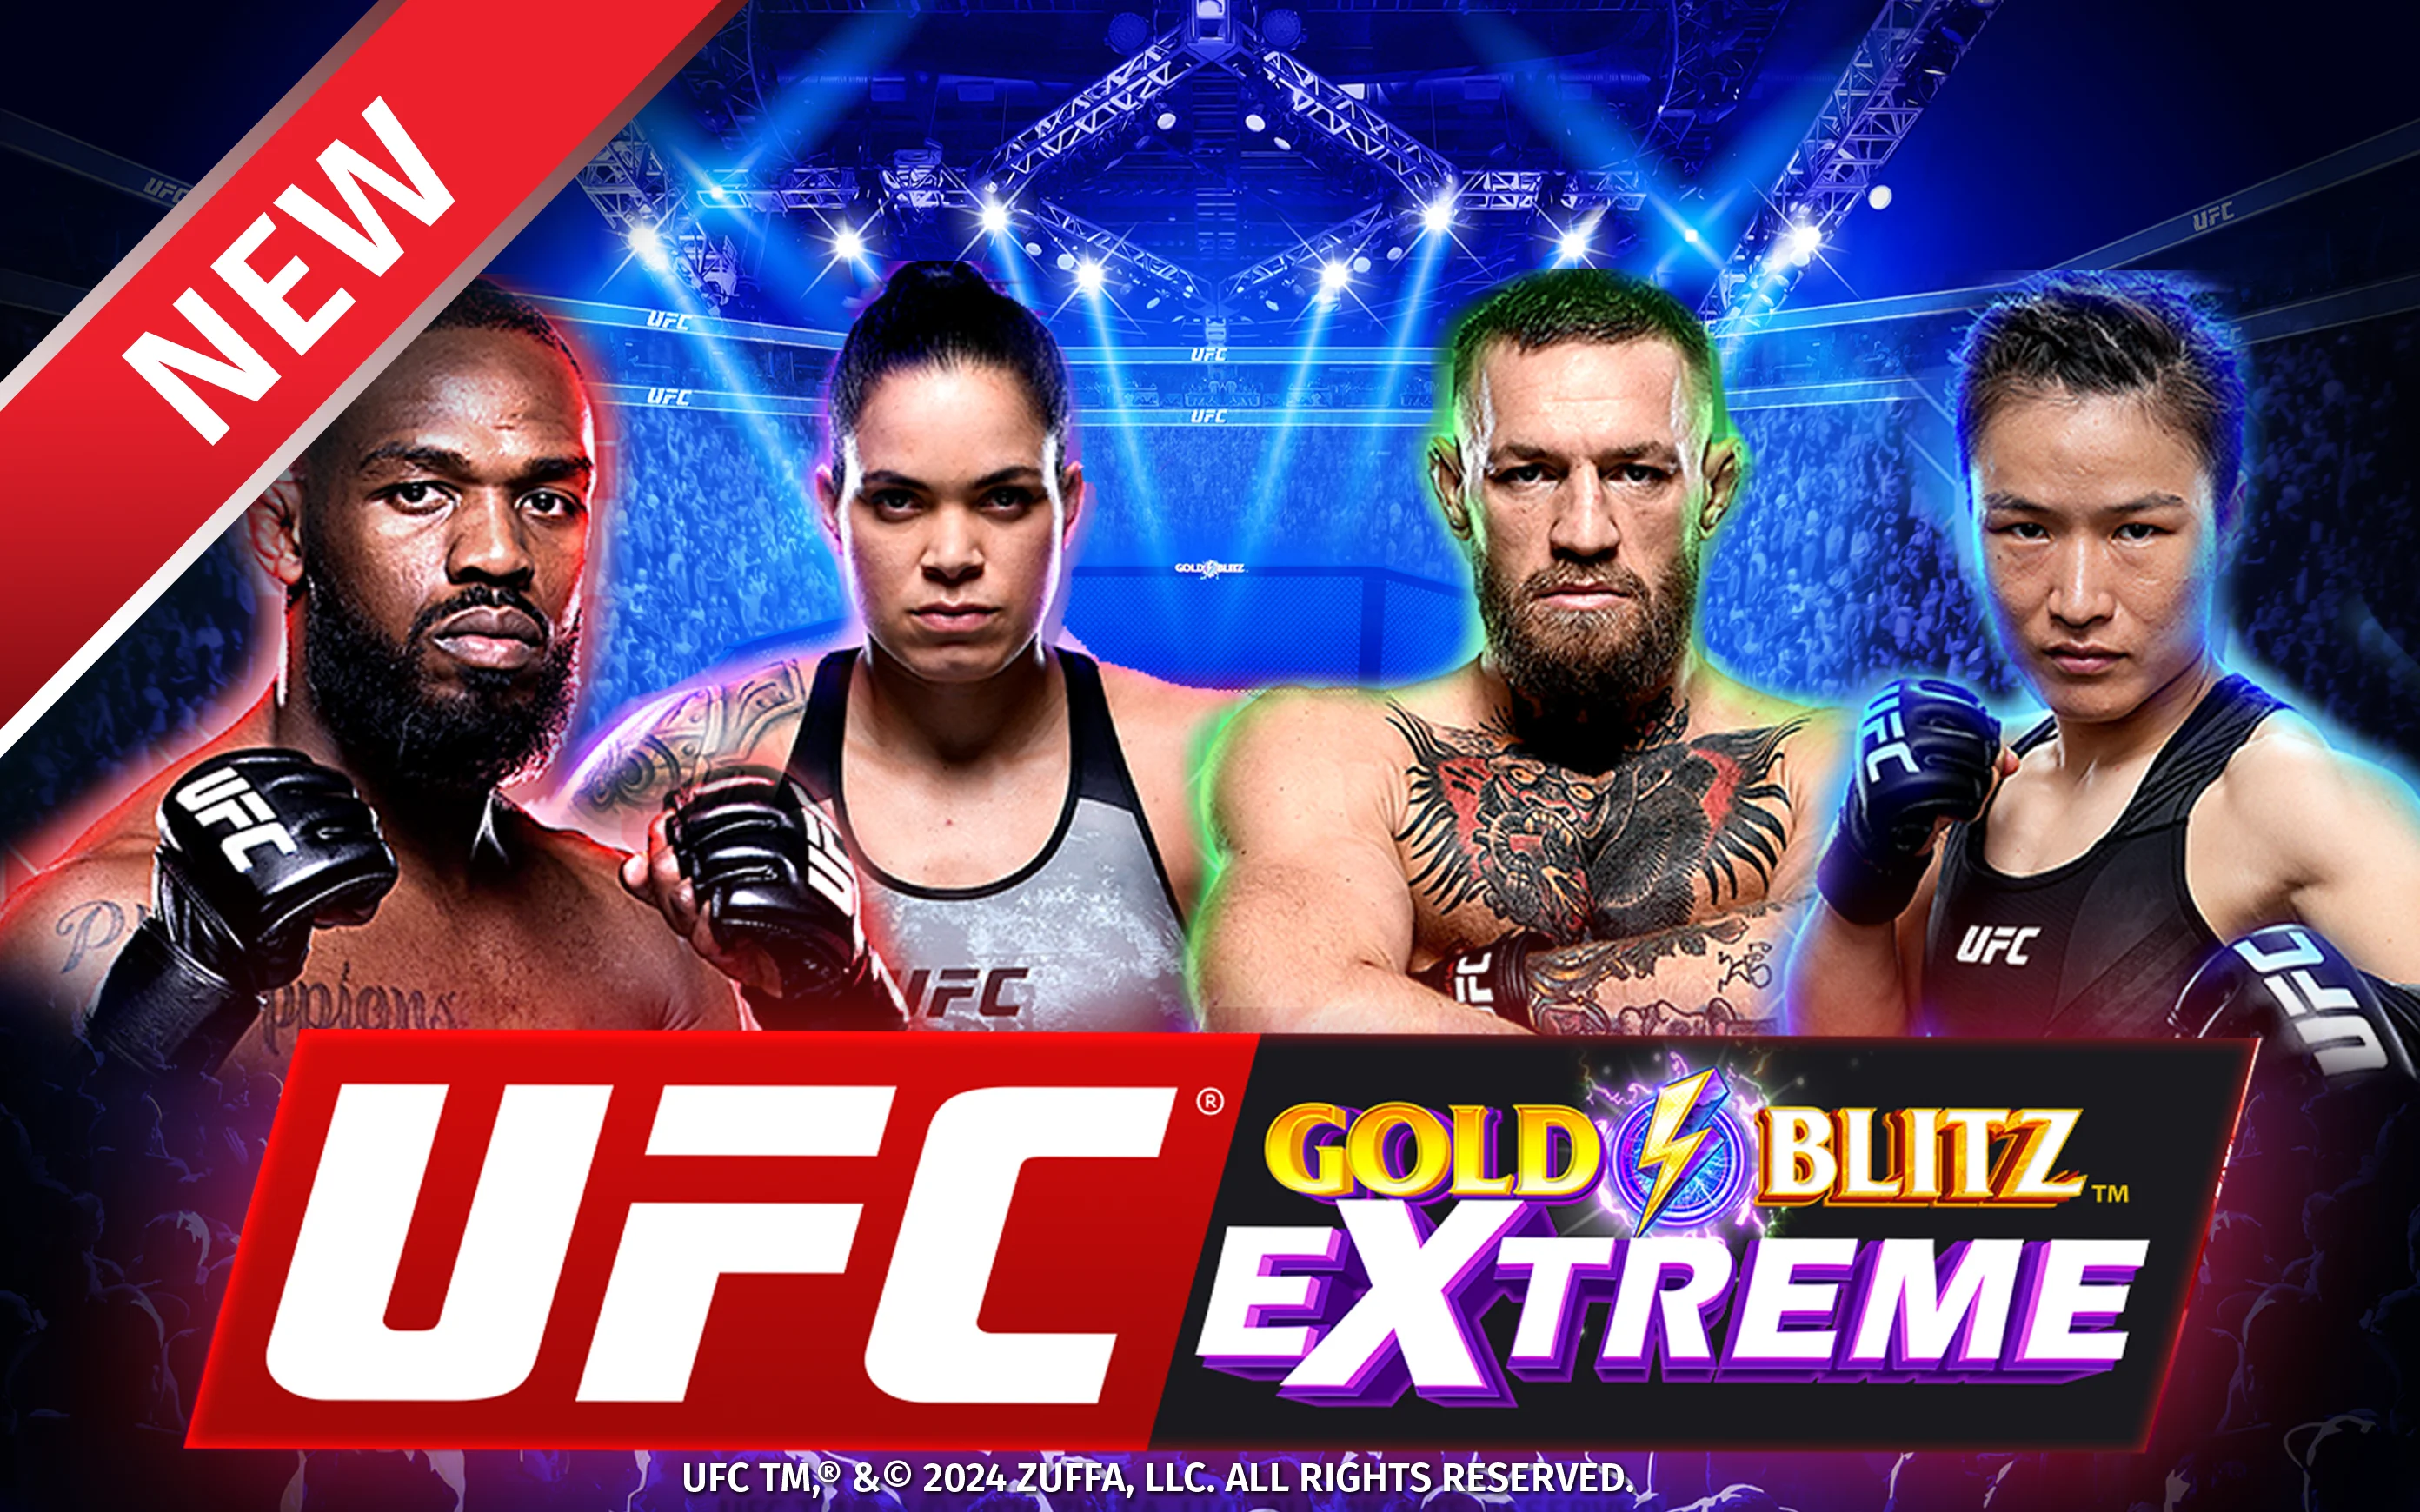 Zagraj w UFC Gold Blitz Extreme™ w kasynie online Starcasino.be